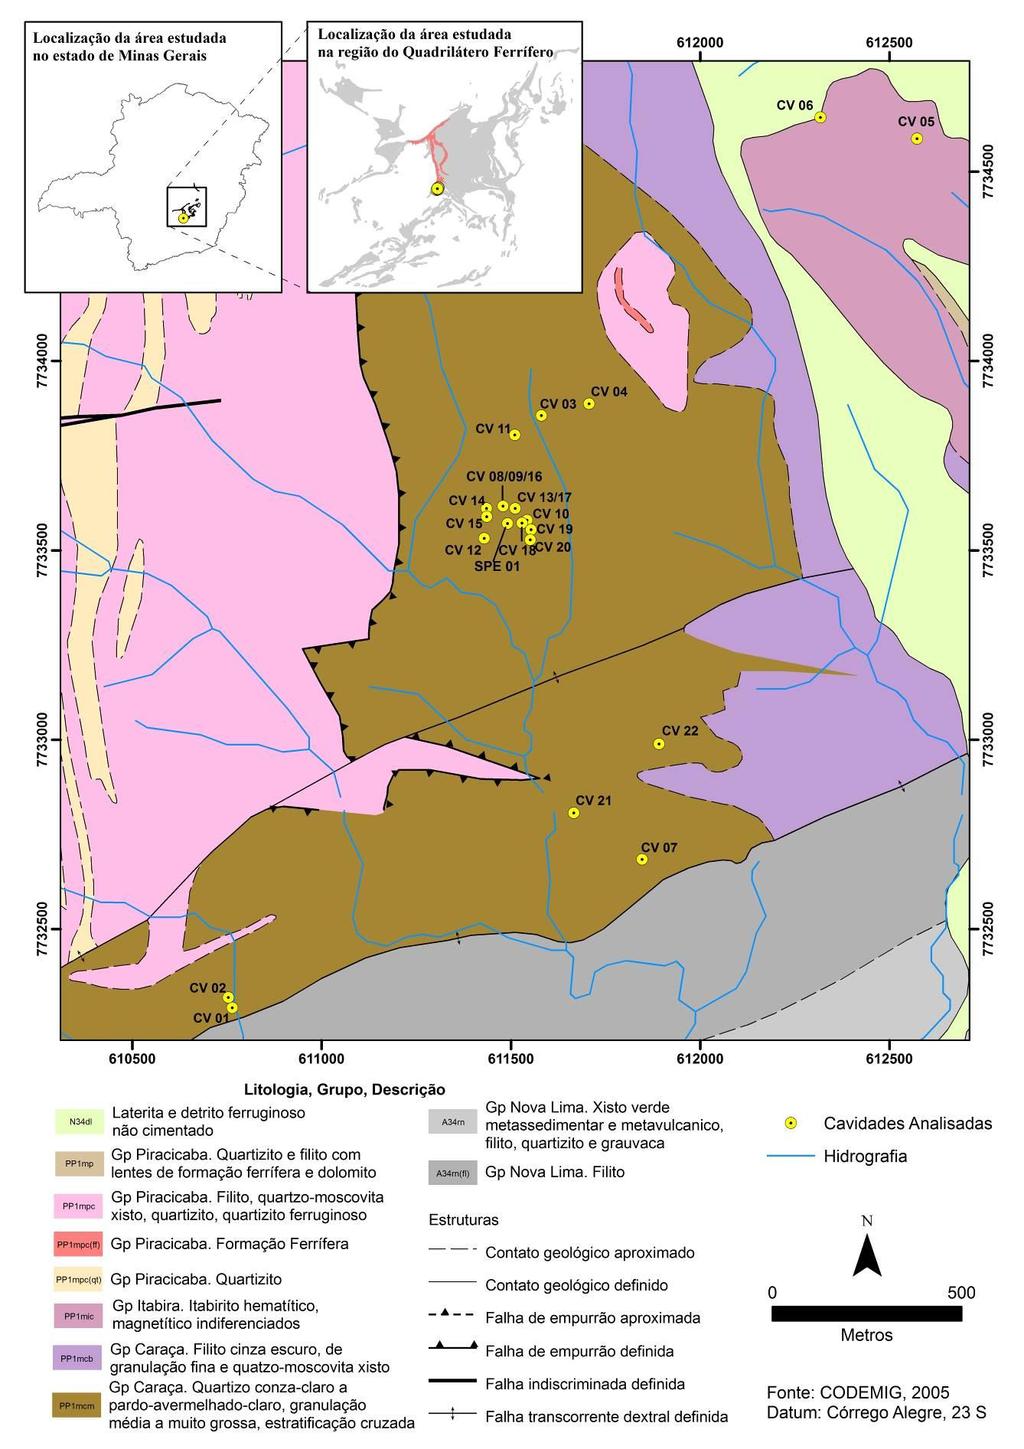 Figura 9: Localização das cavidades analisadas no mapa geológico (fonte: CPRM, 2003).